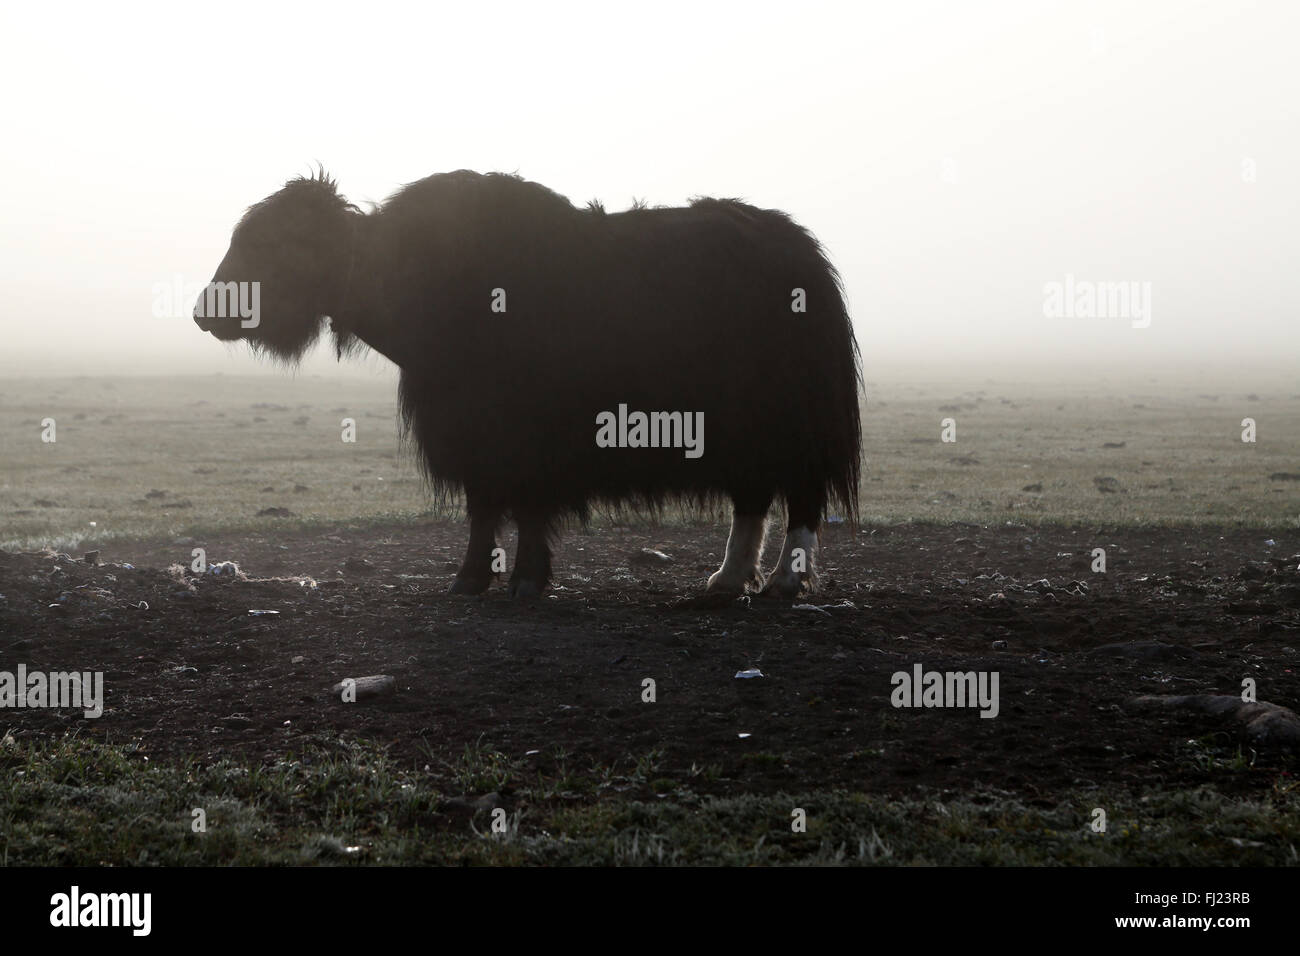 Los yaks en el campamento de nómadas en Mongolia Foto de stock